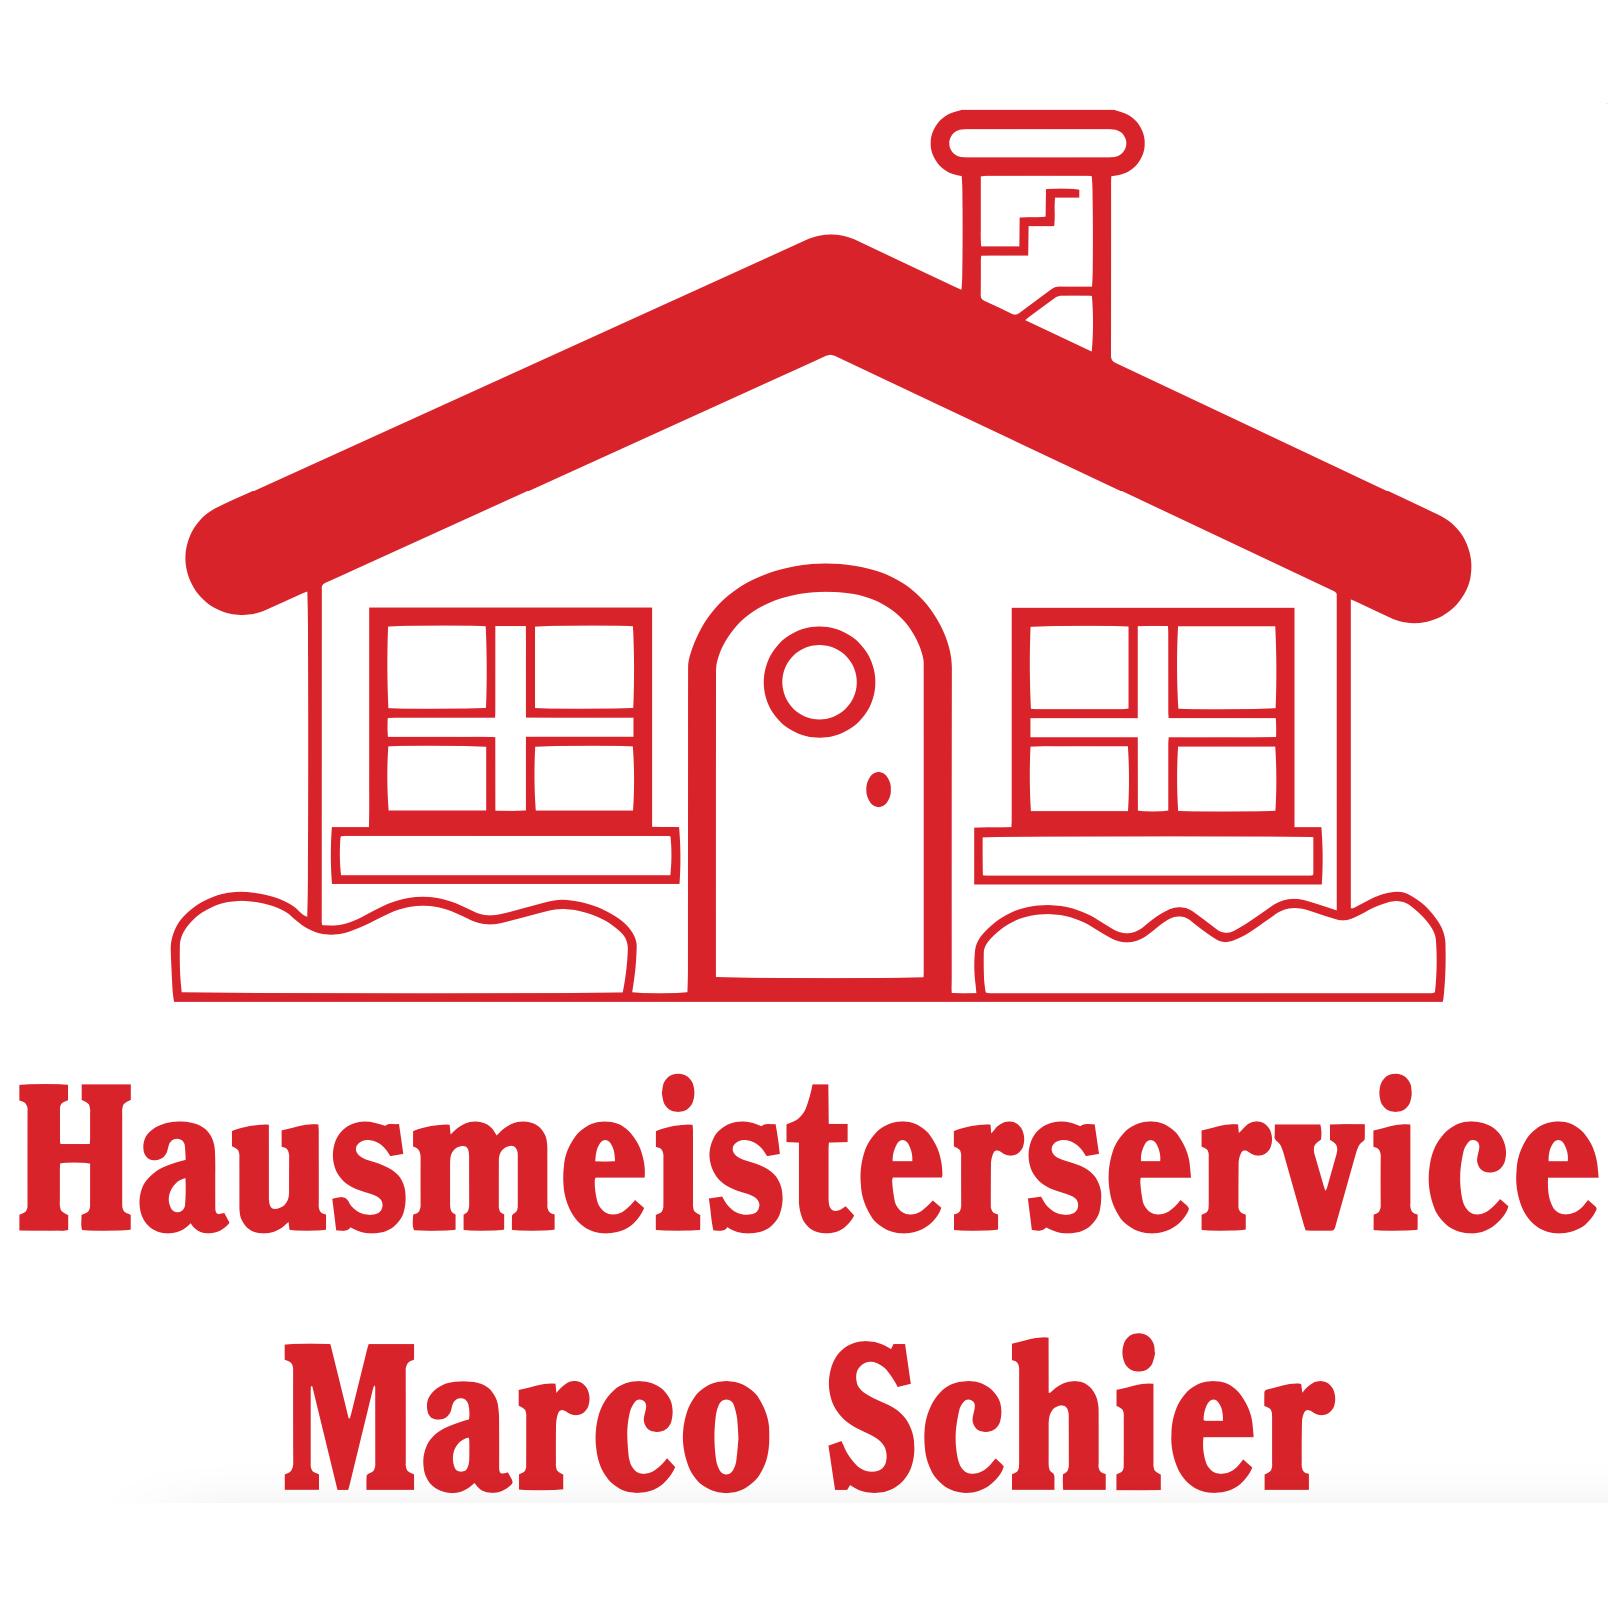 Hausmeisterservice Marco Schier in Todendorf Kreis Stormarn - Logo